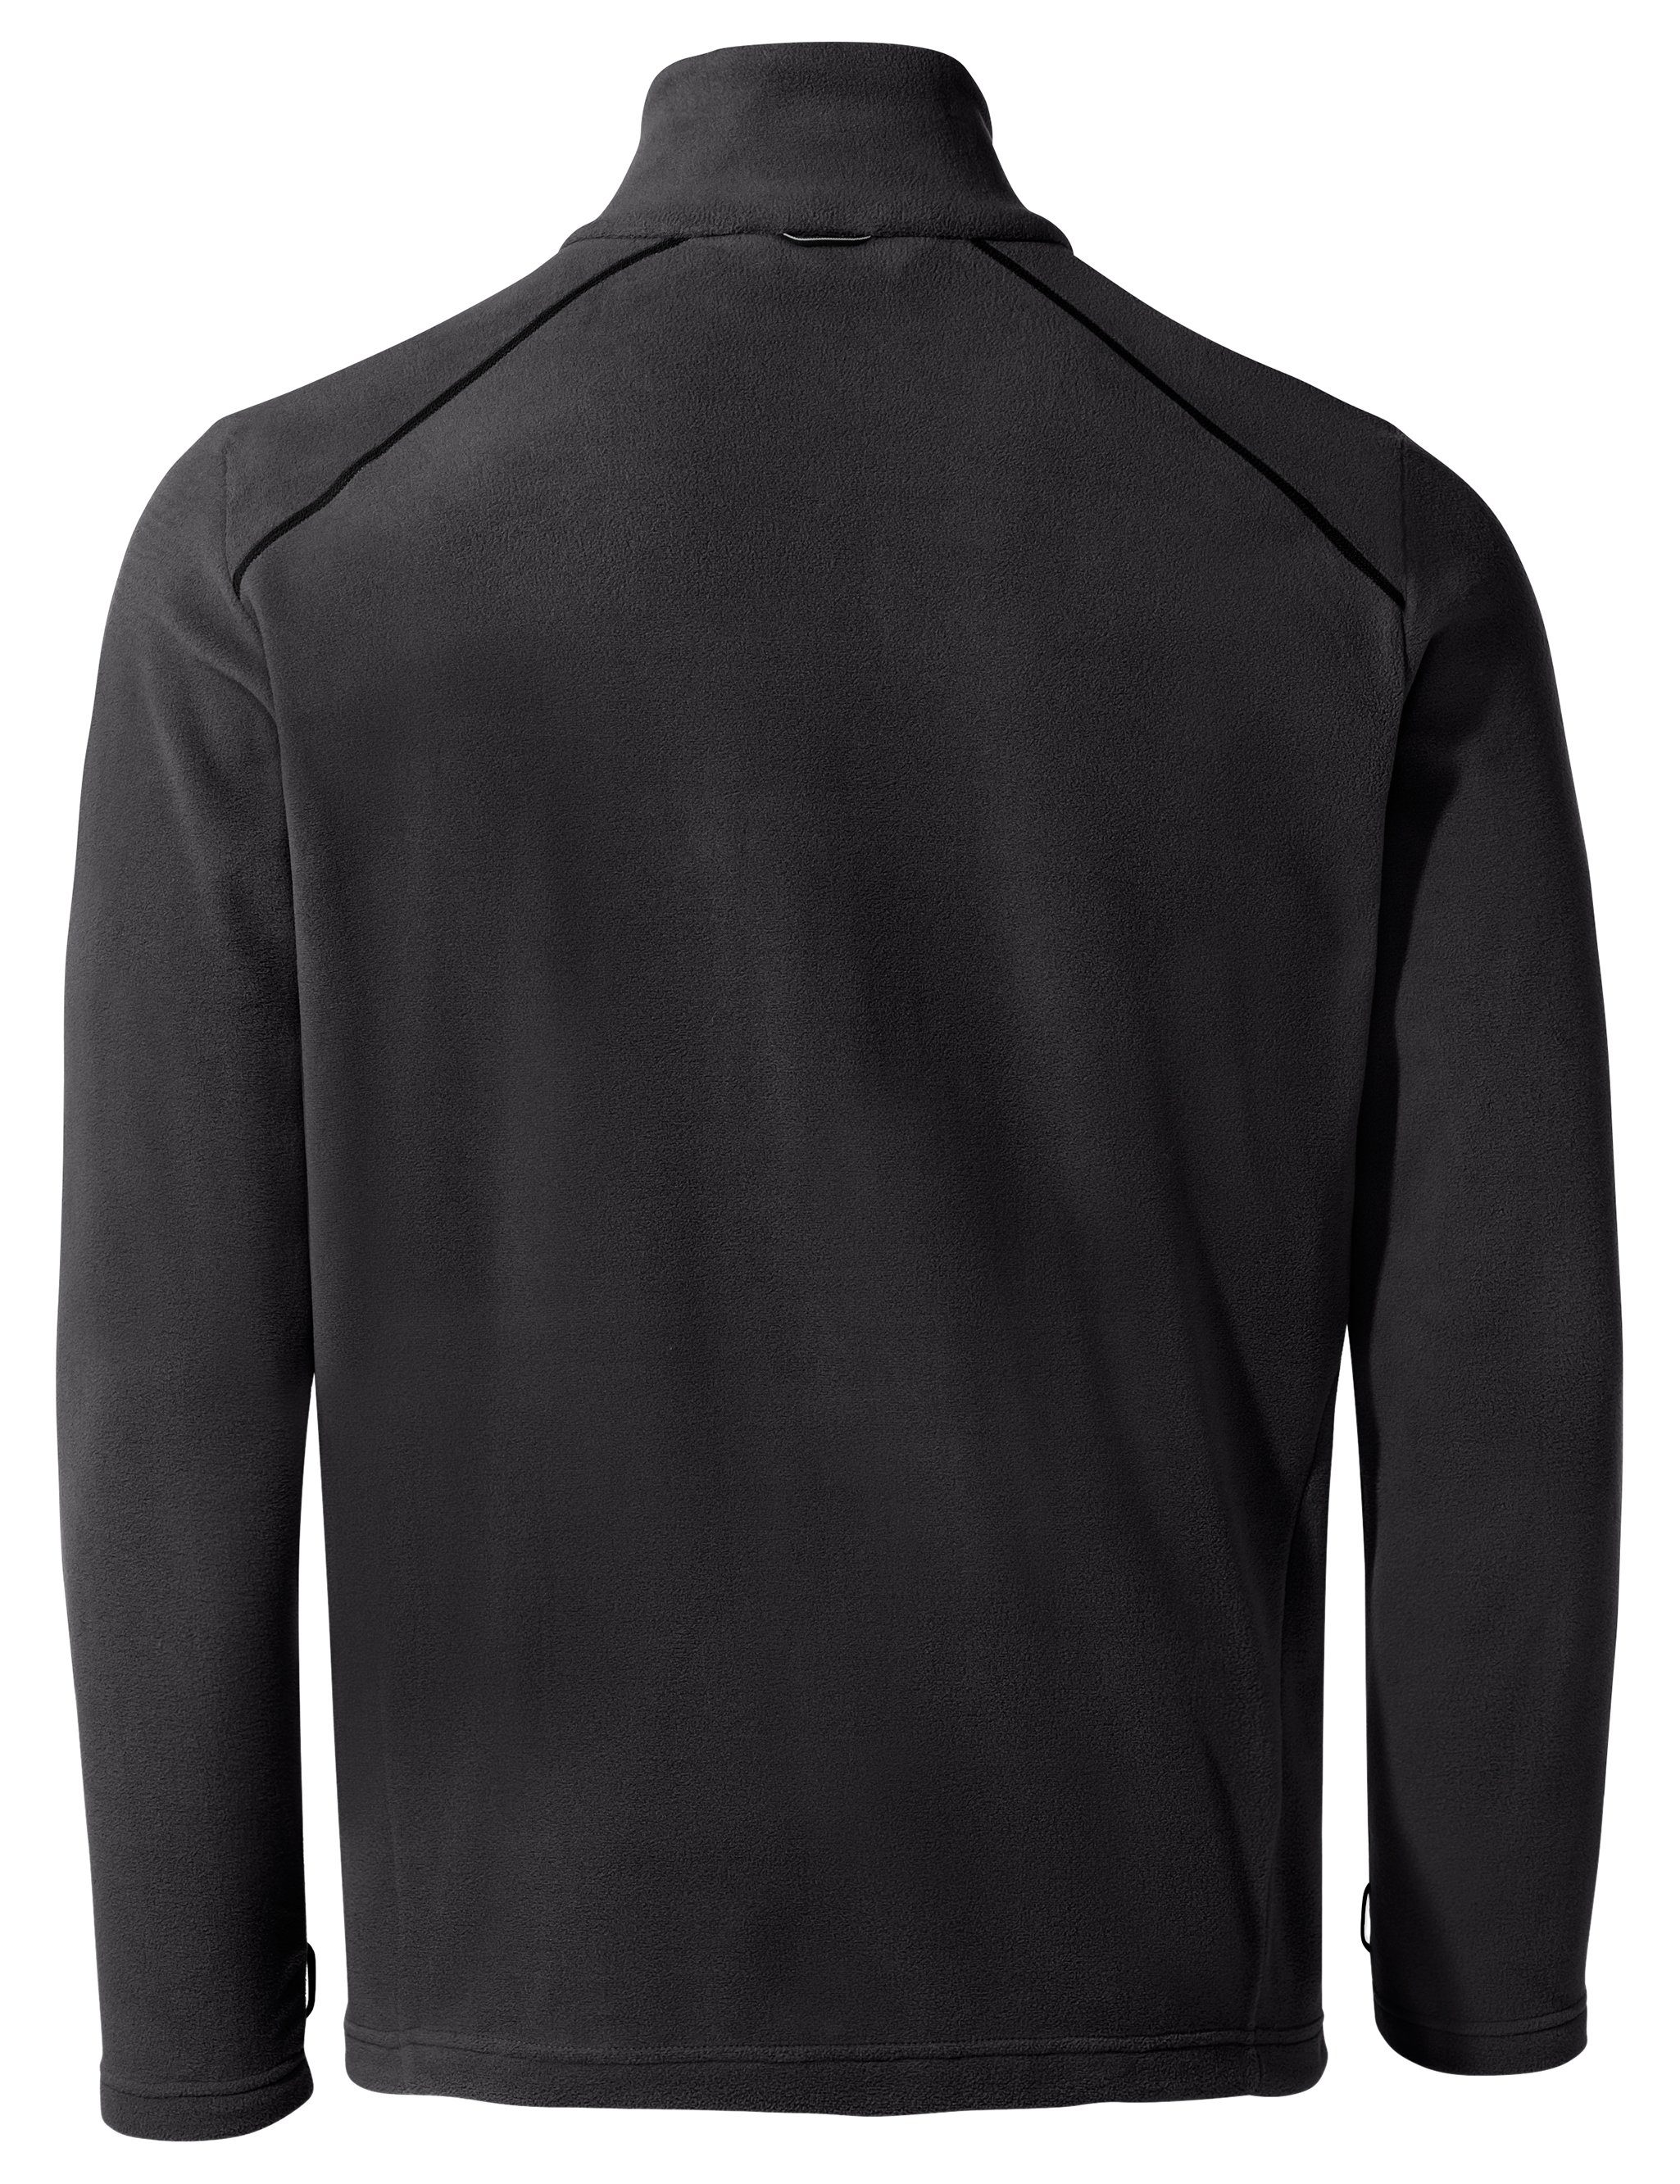 VAUDE Outdoorjacke Men's Rosemoor black Jacket II (1-St) Klimaneutral kompensiert Fleece